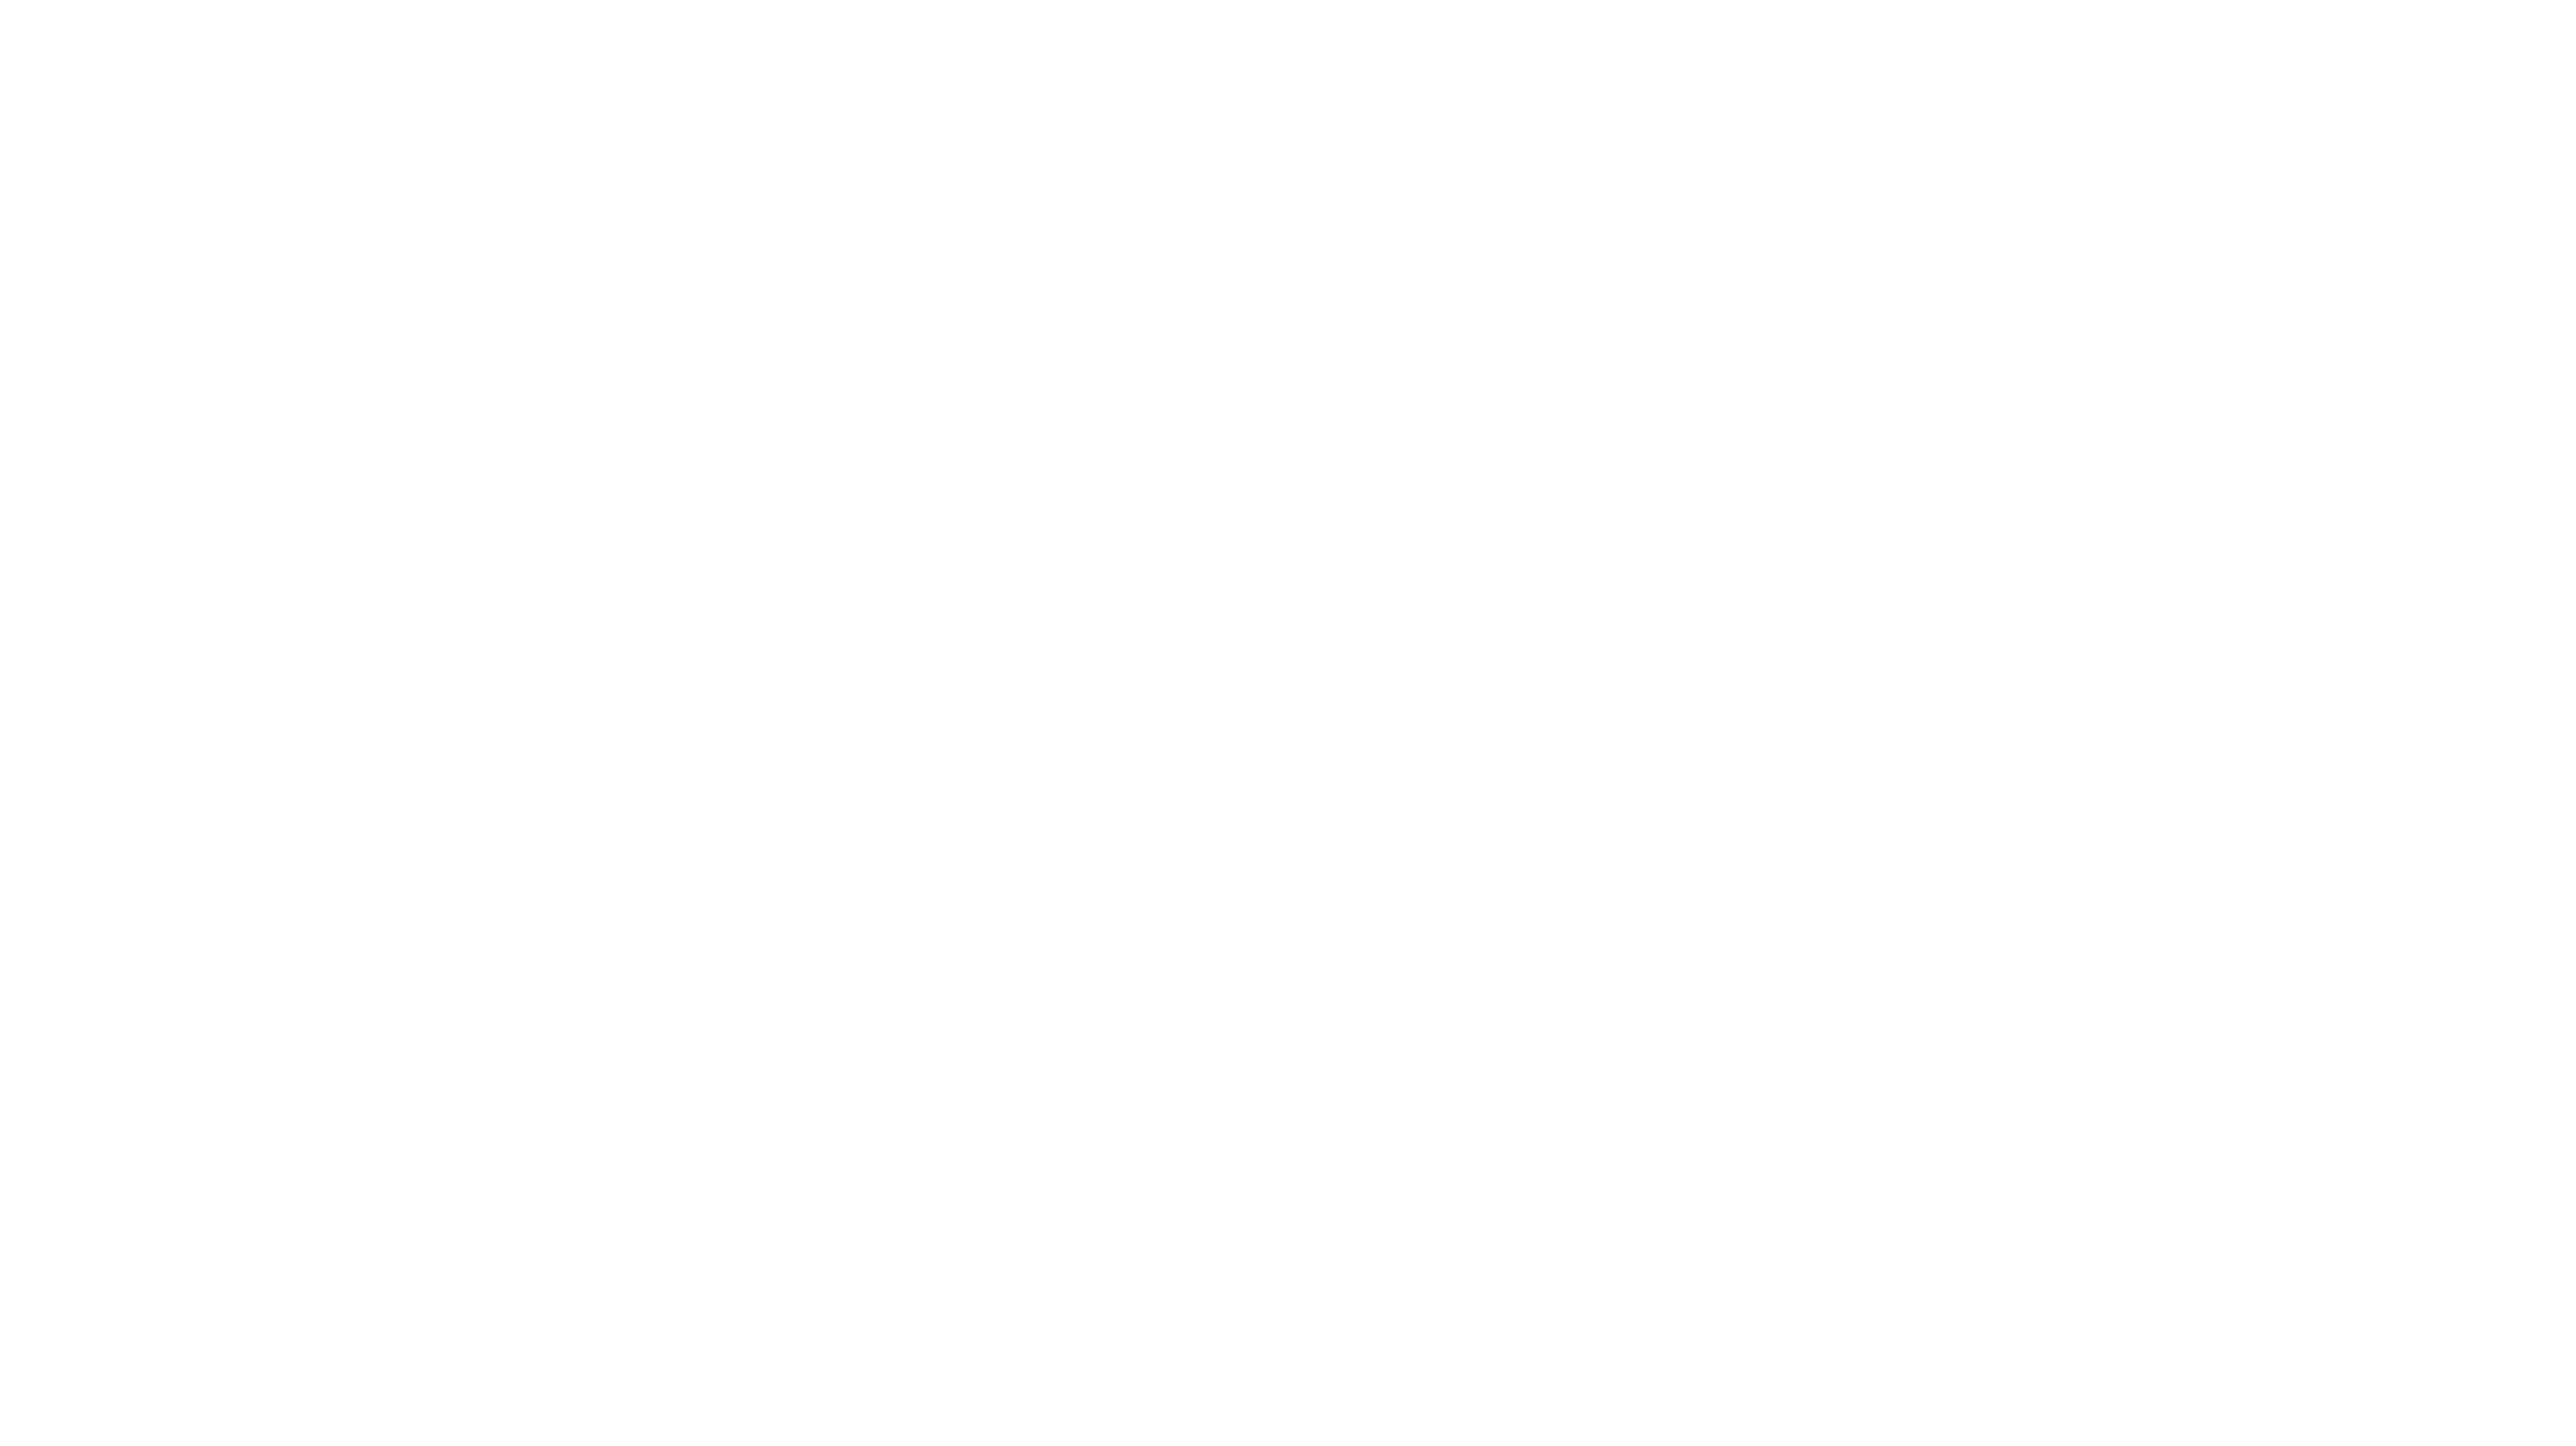 Trills and Glissandos Piano Studio